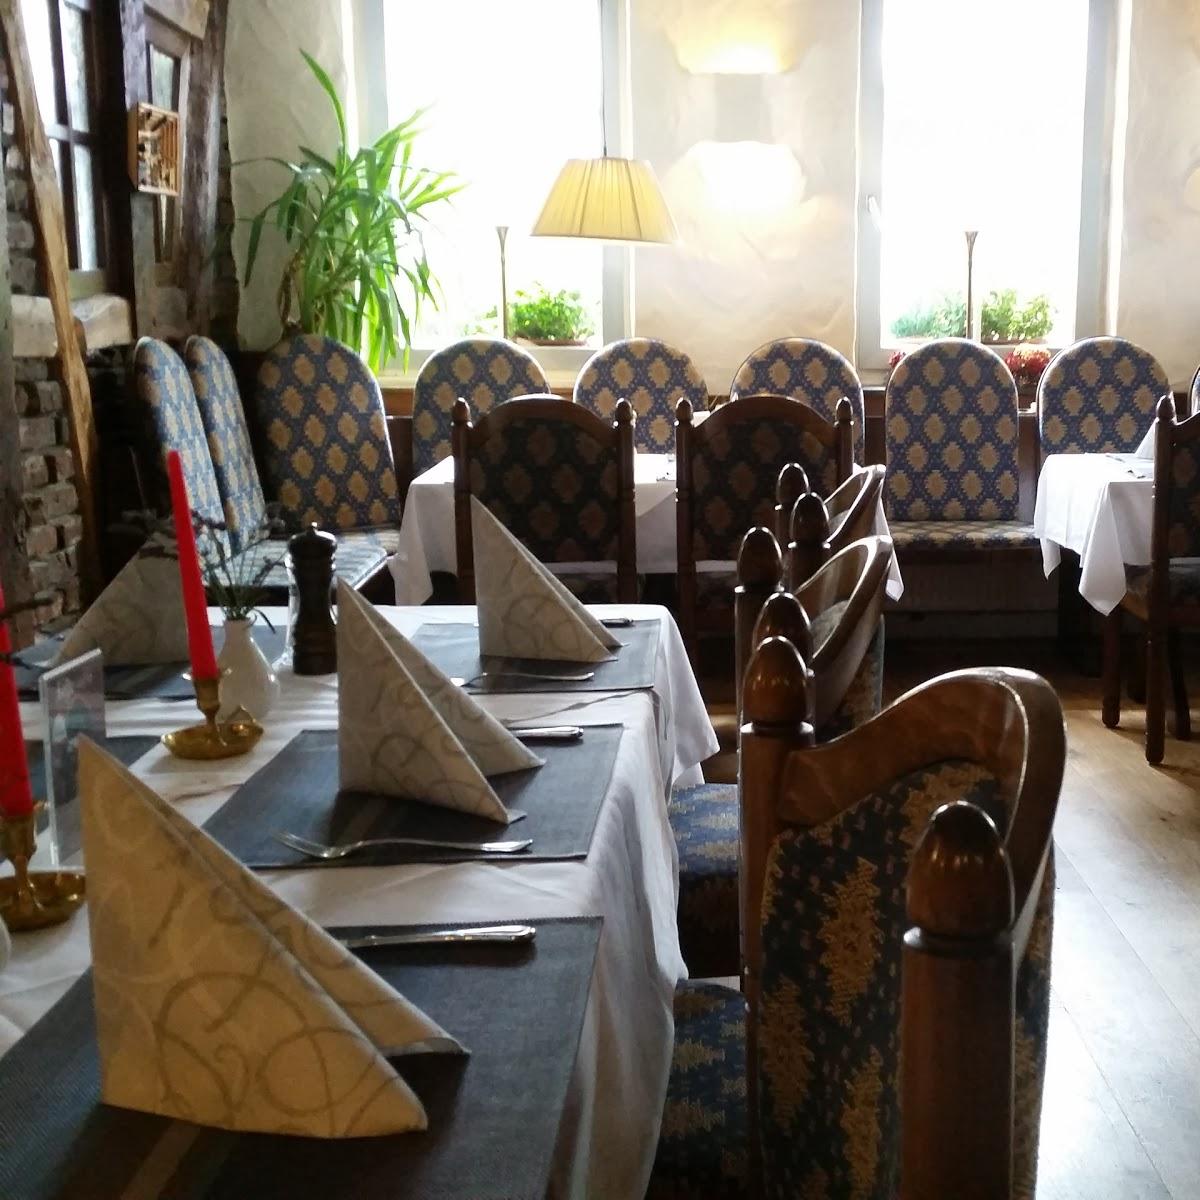 Restaurant "Steakhaus Grillg(l)ut" in Arnsberg